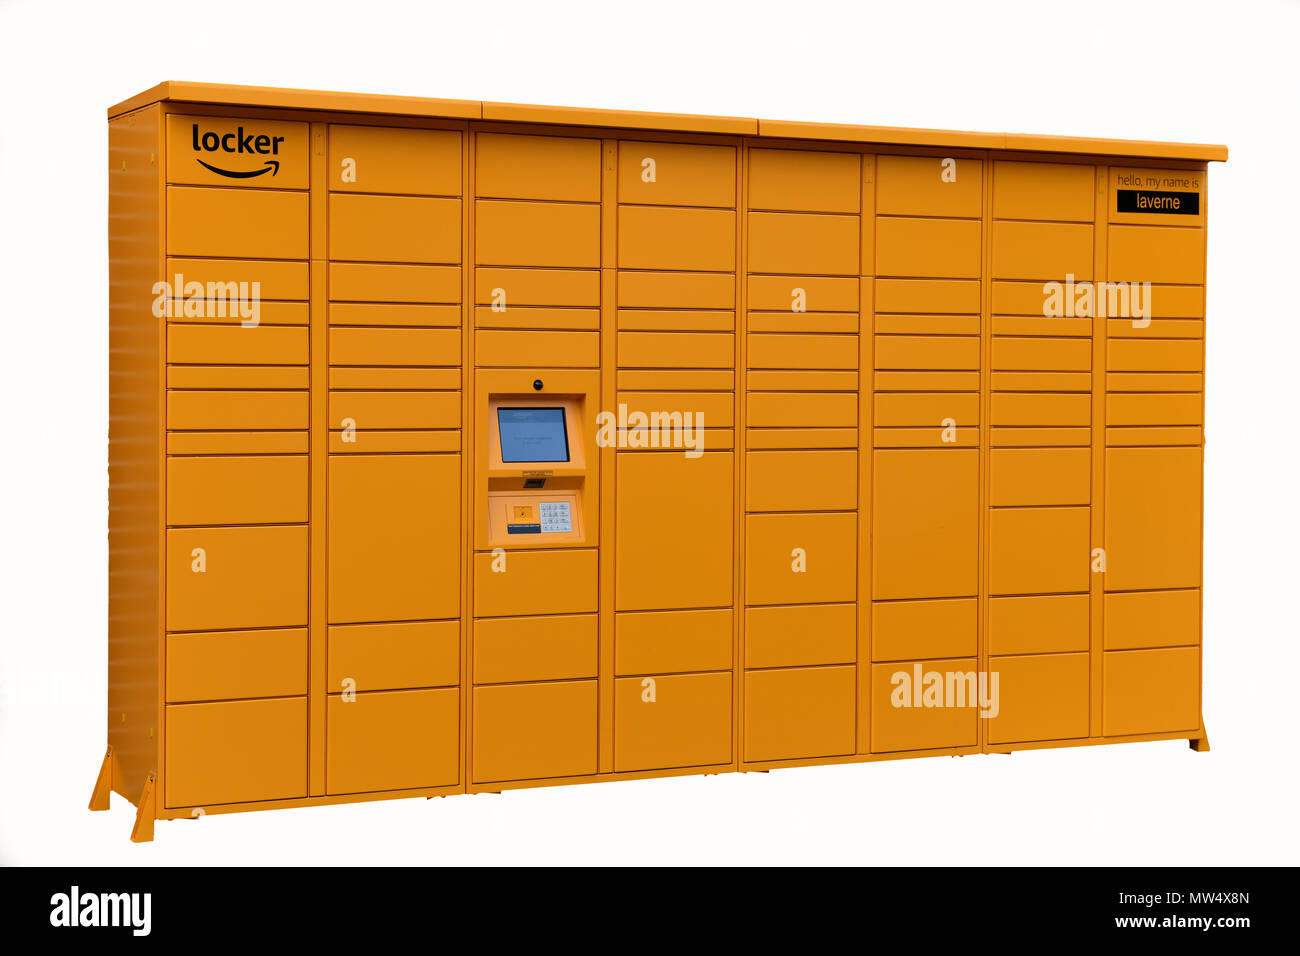 Amazon Locker un sicuro sistema di erogazione che Amazon utilizza in luoghi pubblici per il ritiro e la restituzione di confezioni Foto Stock